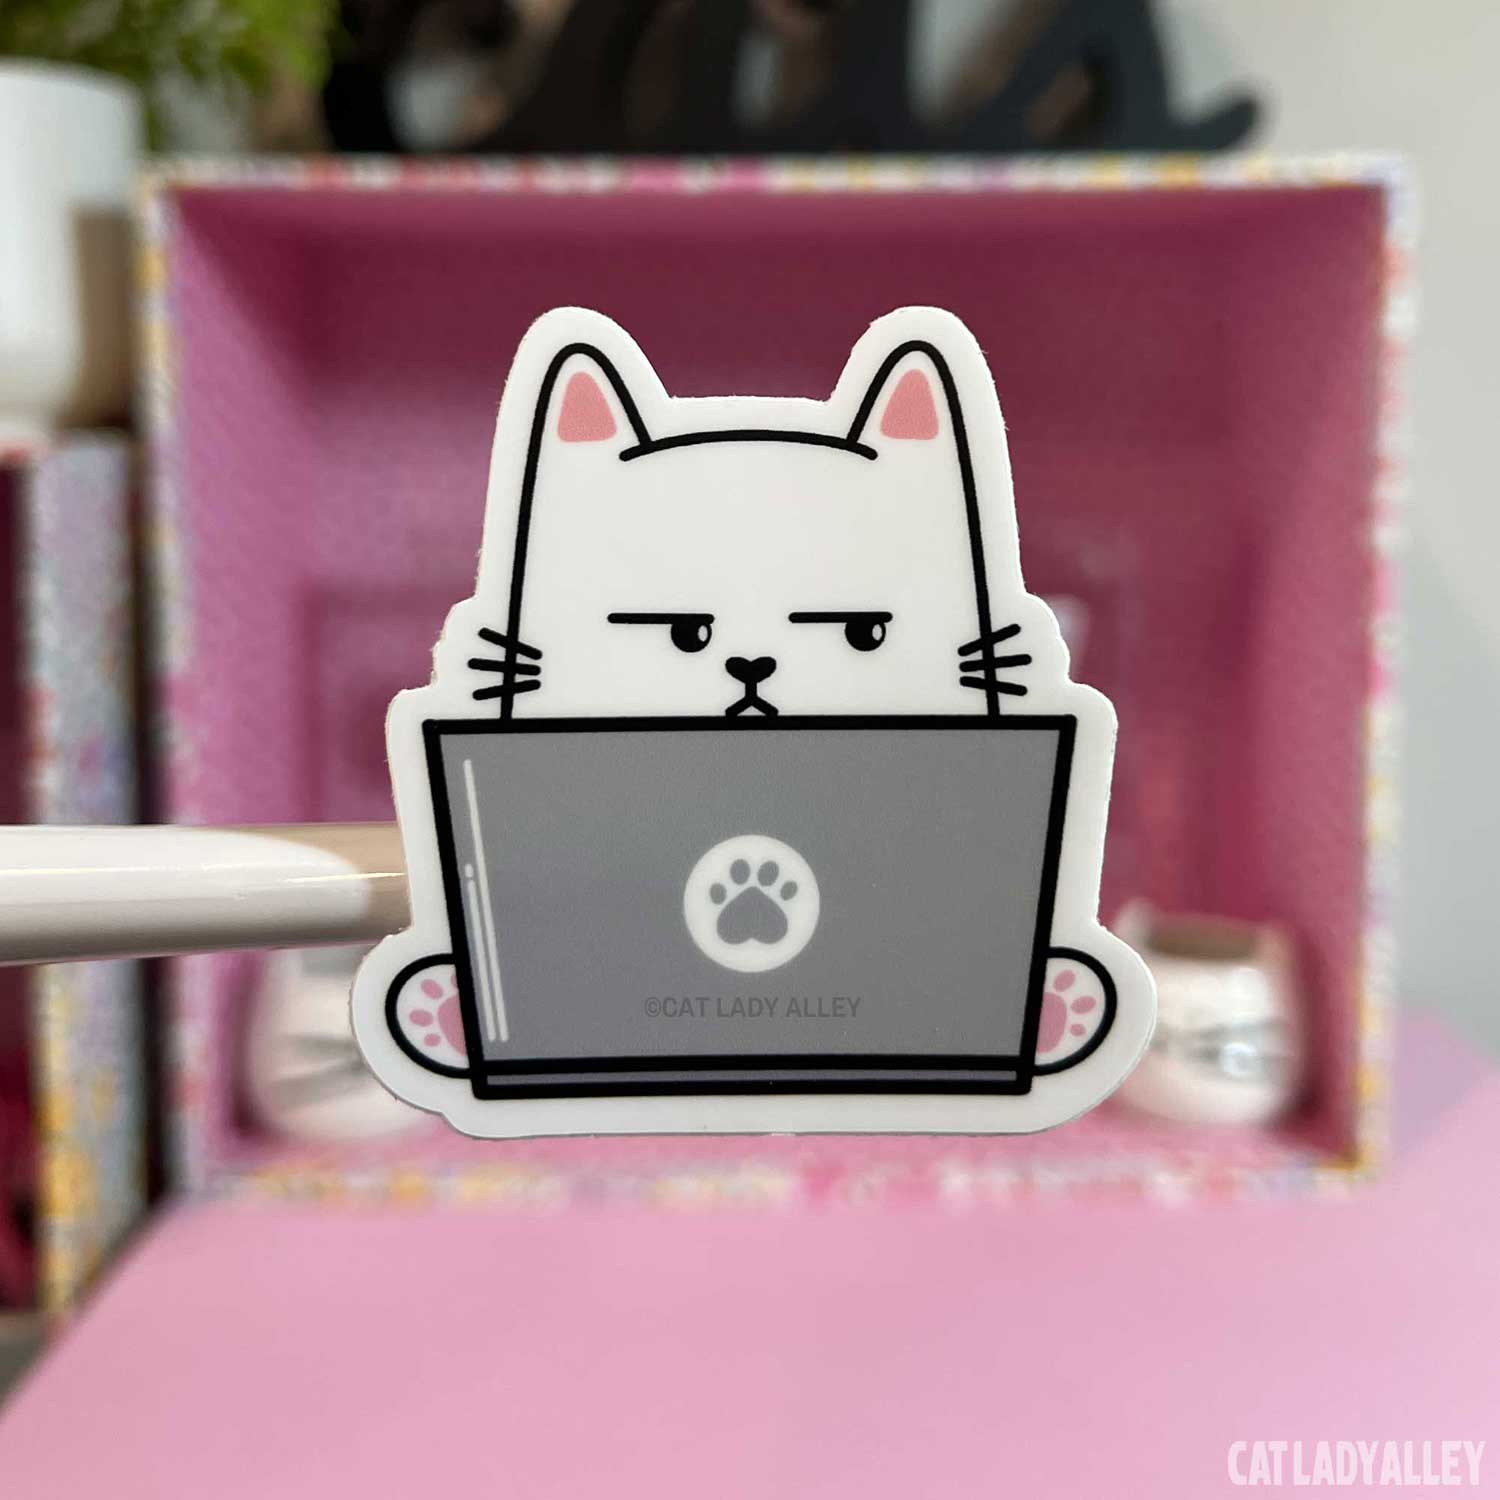 side-eye cat sticker